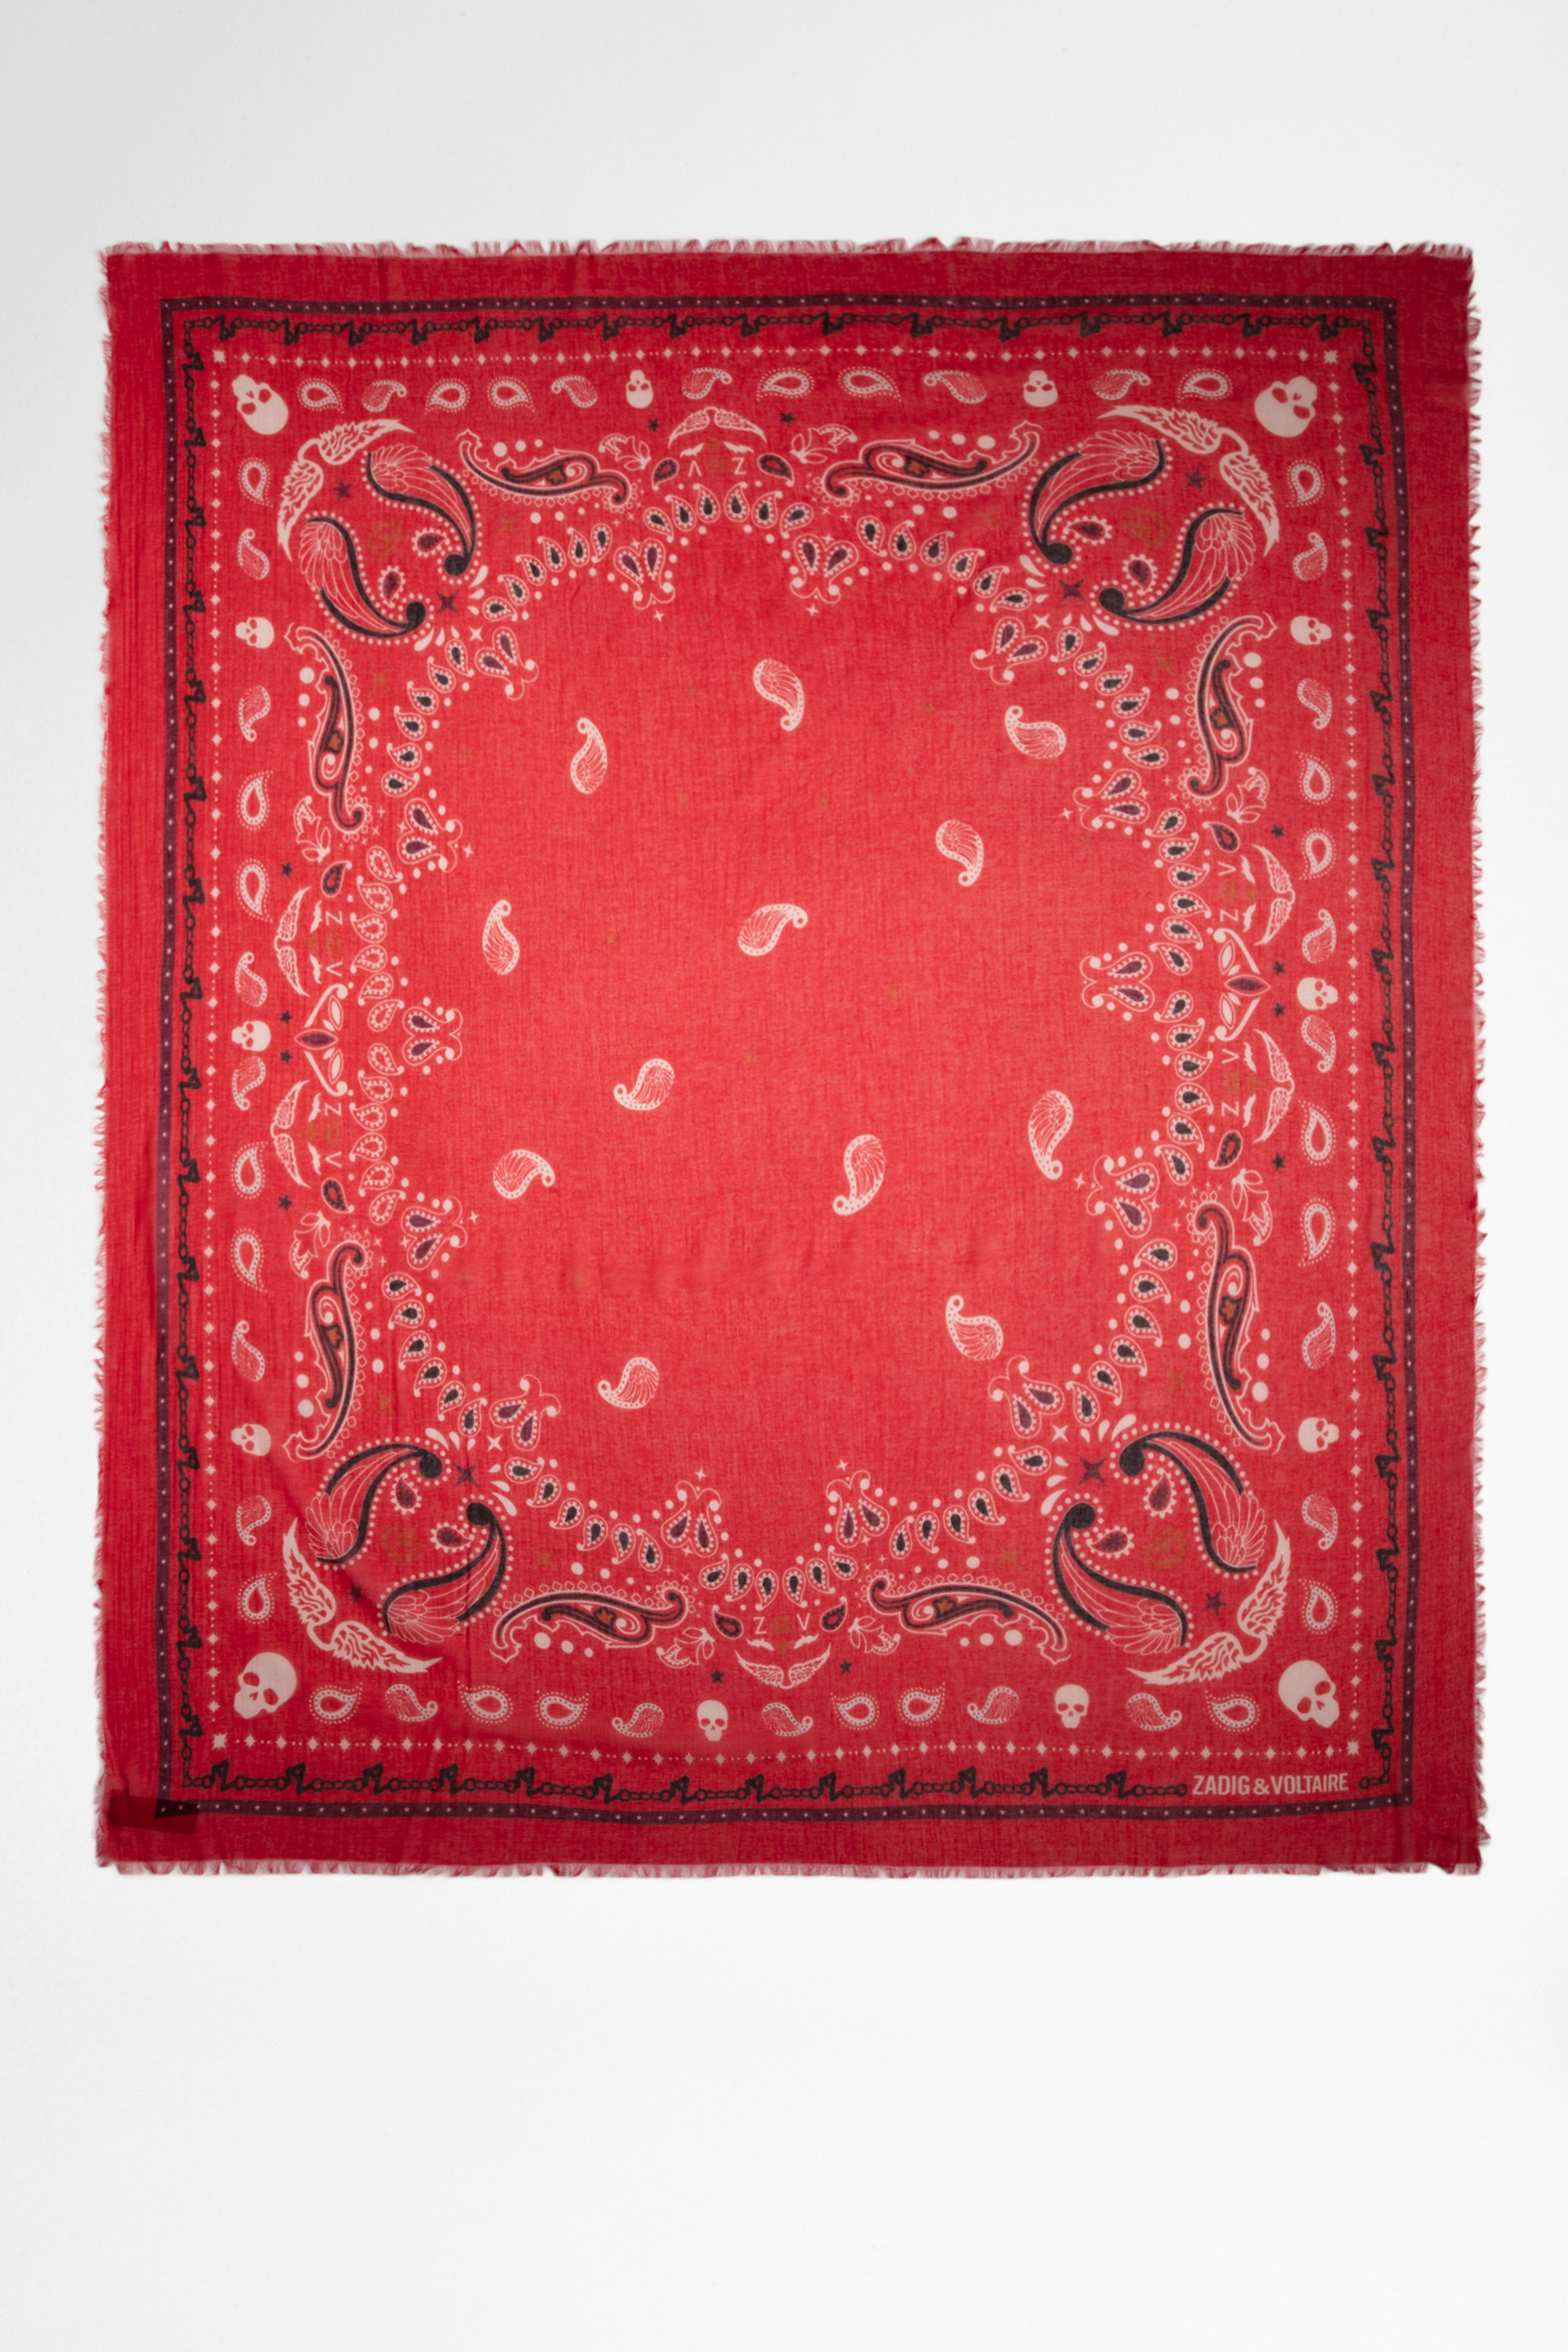 Foulard Delta Foulard in cotone stampa bandana rosso, donna. Questo prodotto é certificato GOTS e realizzato con fibre provenienti da agricoltura biologica